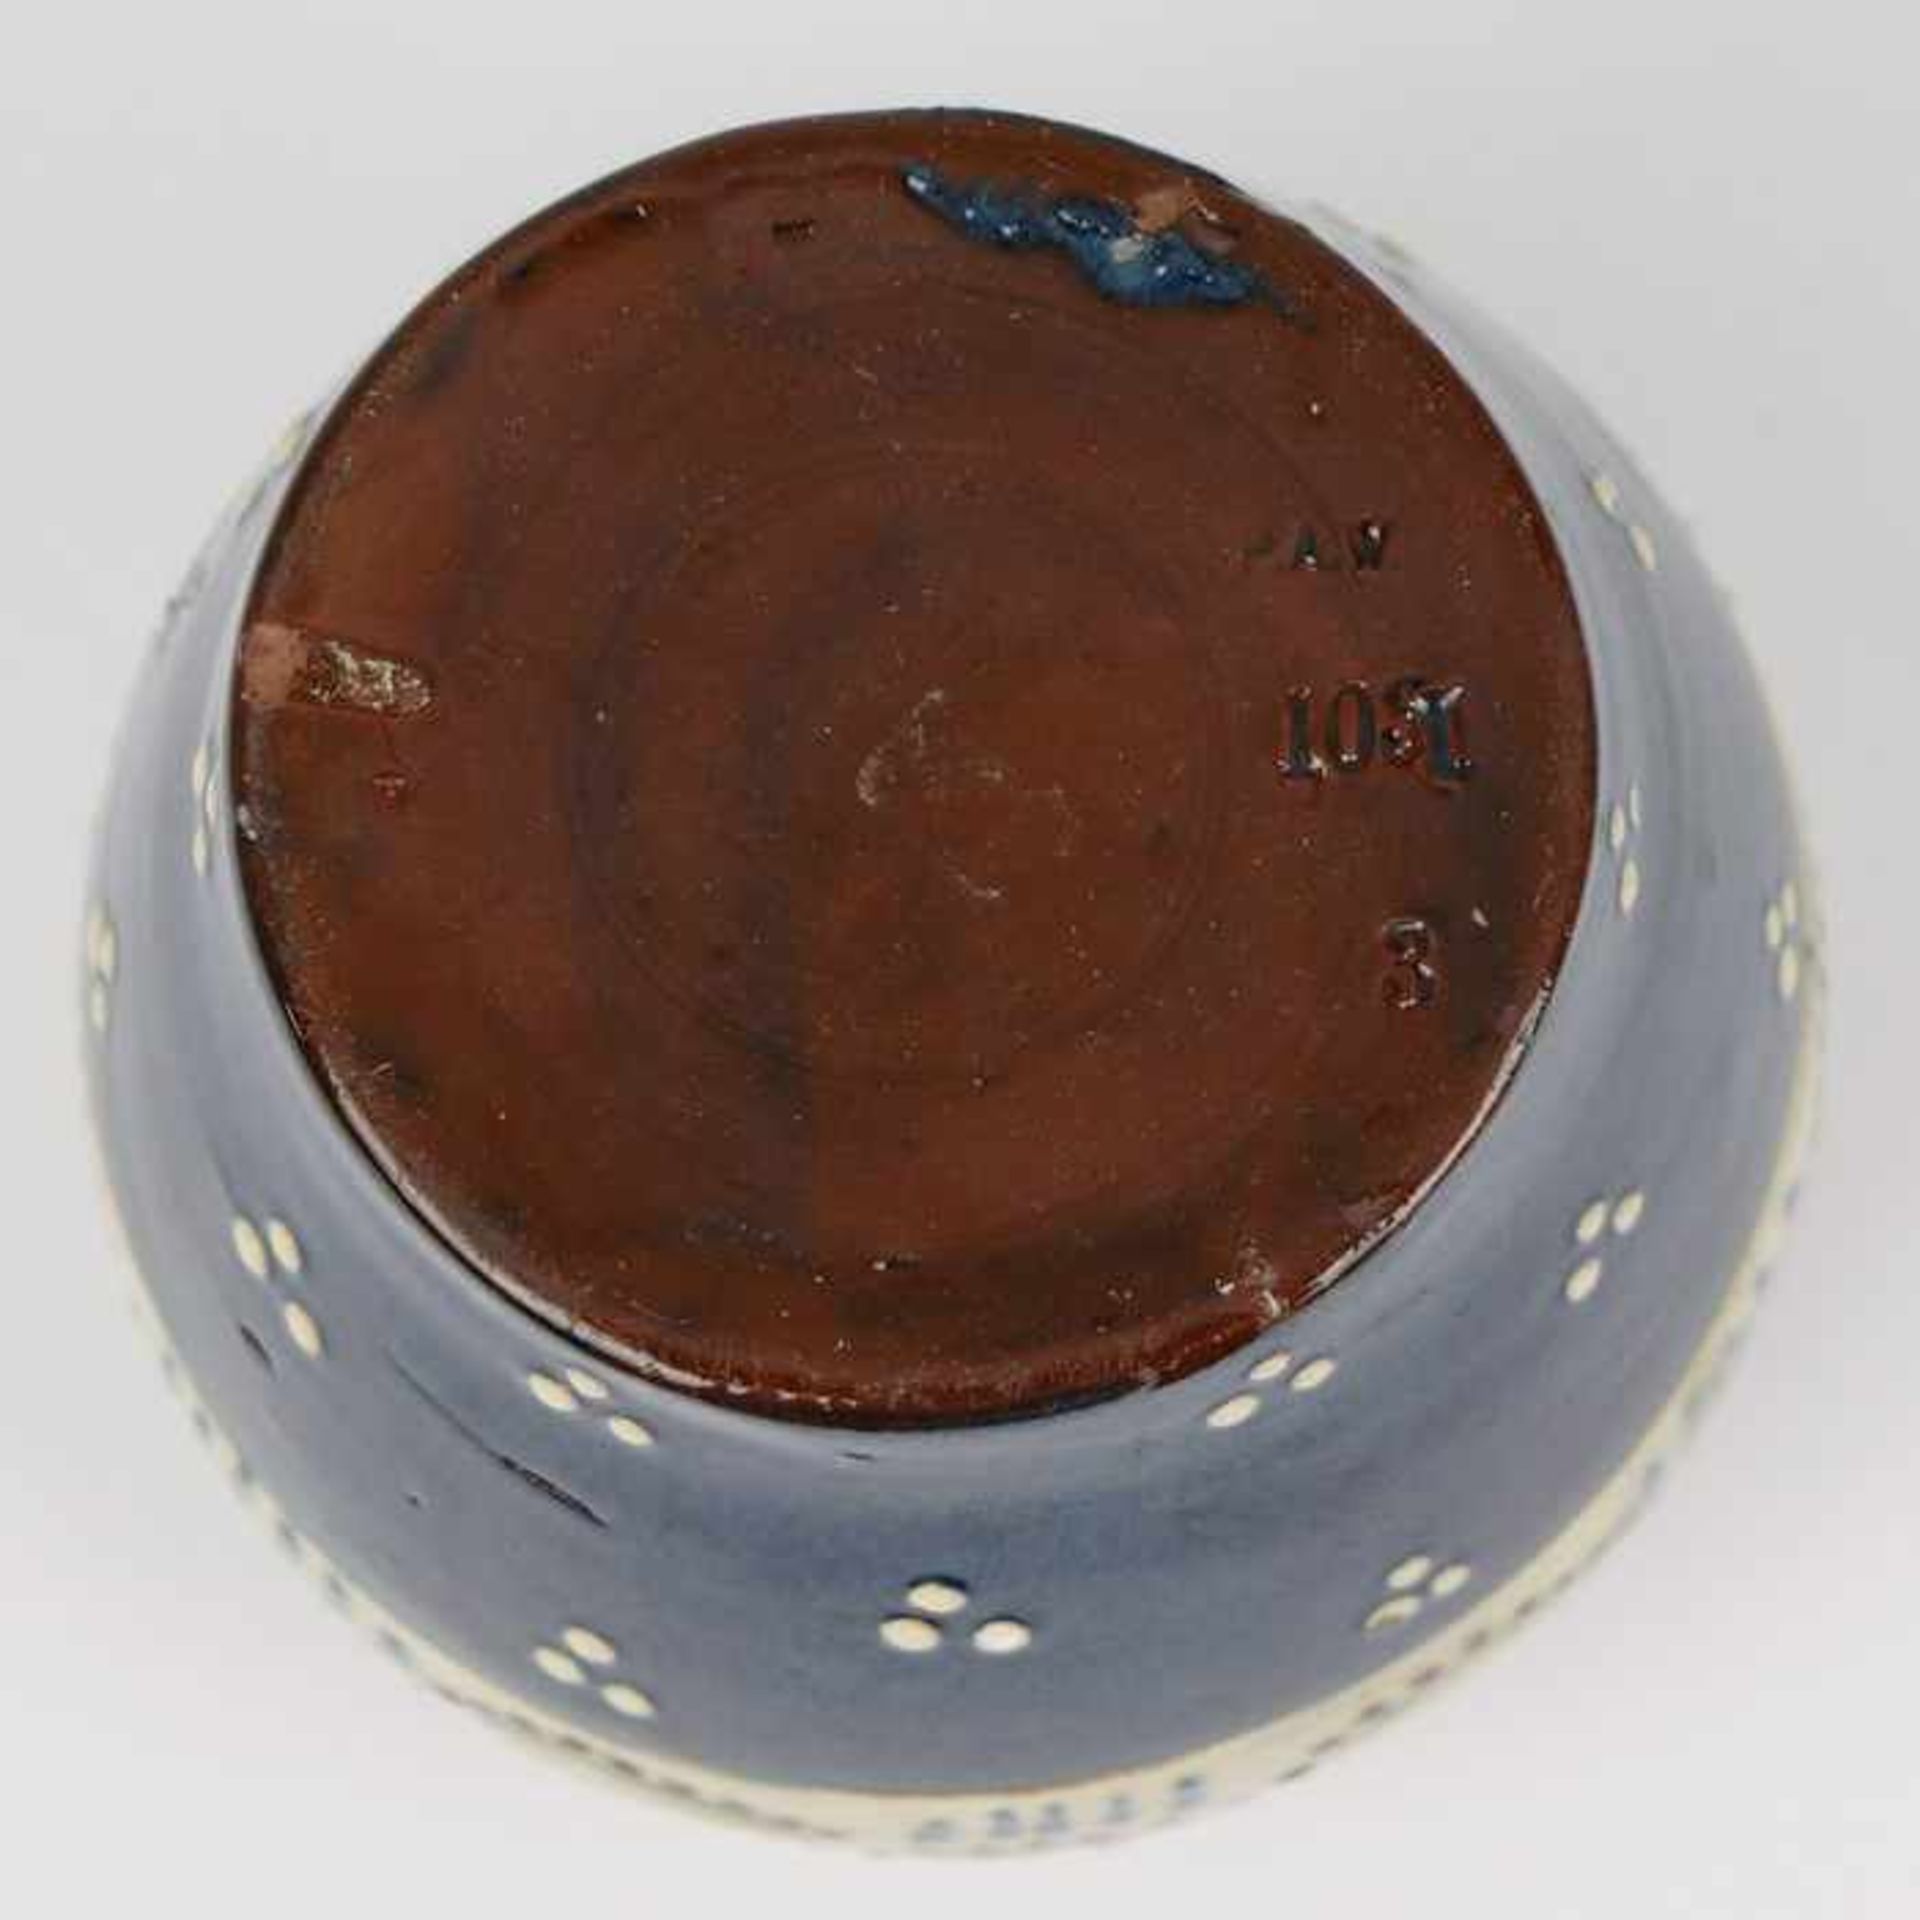 Wranitzky, P.A. - Vaseum 1900, Prägemarke, Nr. 103, bauchiger Korpus, blauer Fond mit weißen Tupfen, - Bild 3 aus 4